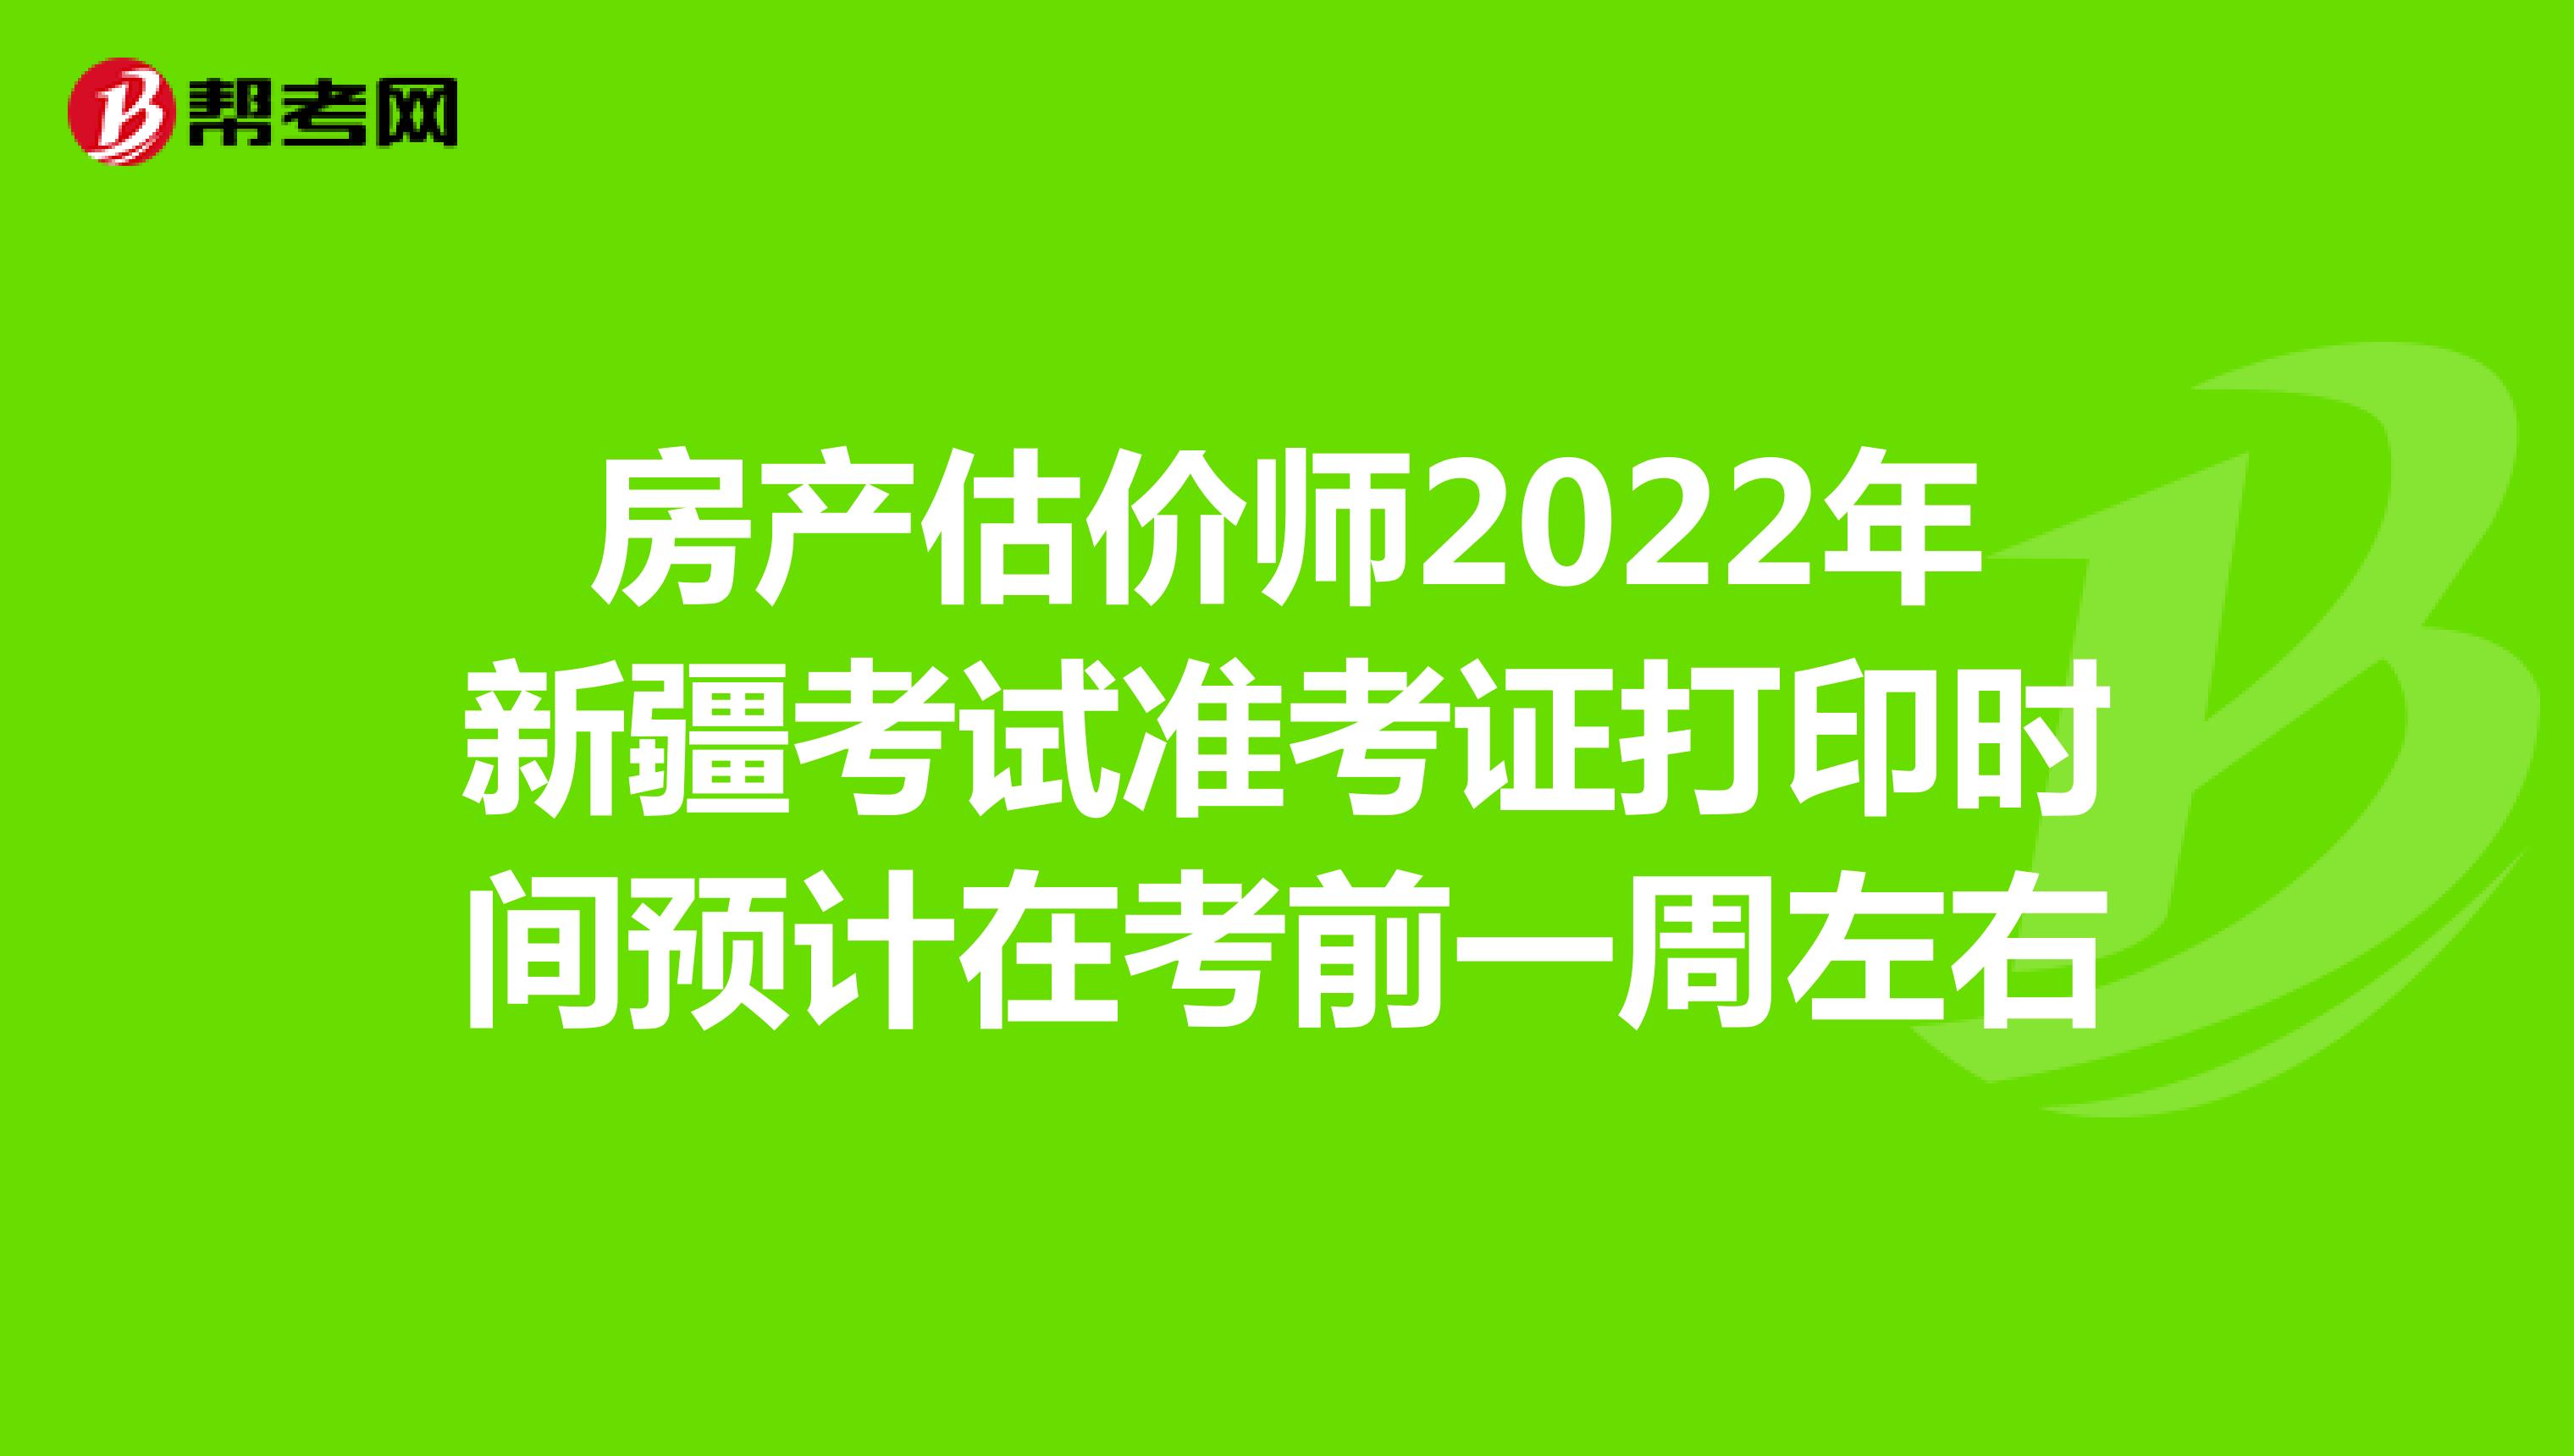 房产估价师2022年新疆考试准考证打印时间预计在考前一周左右